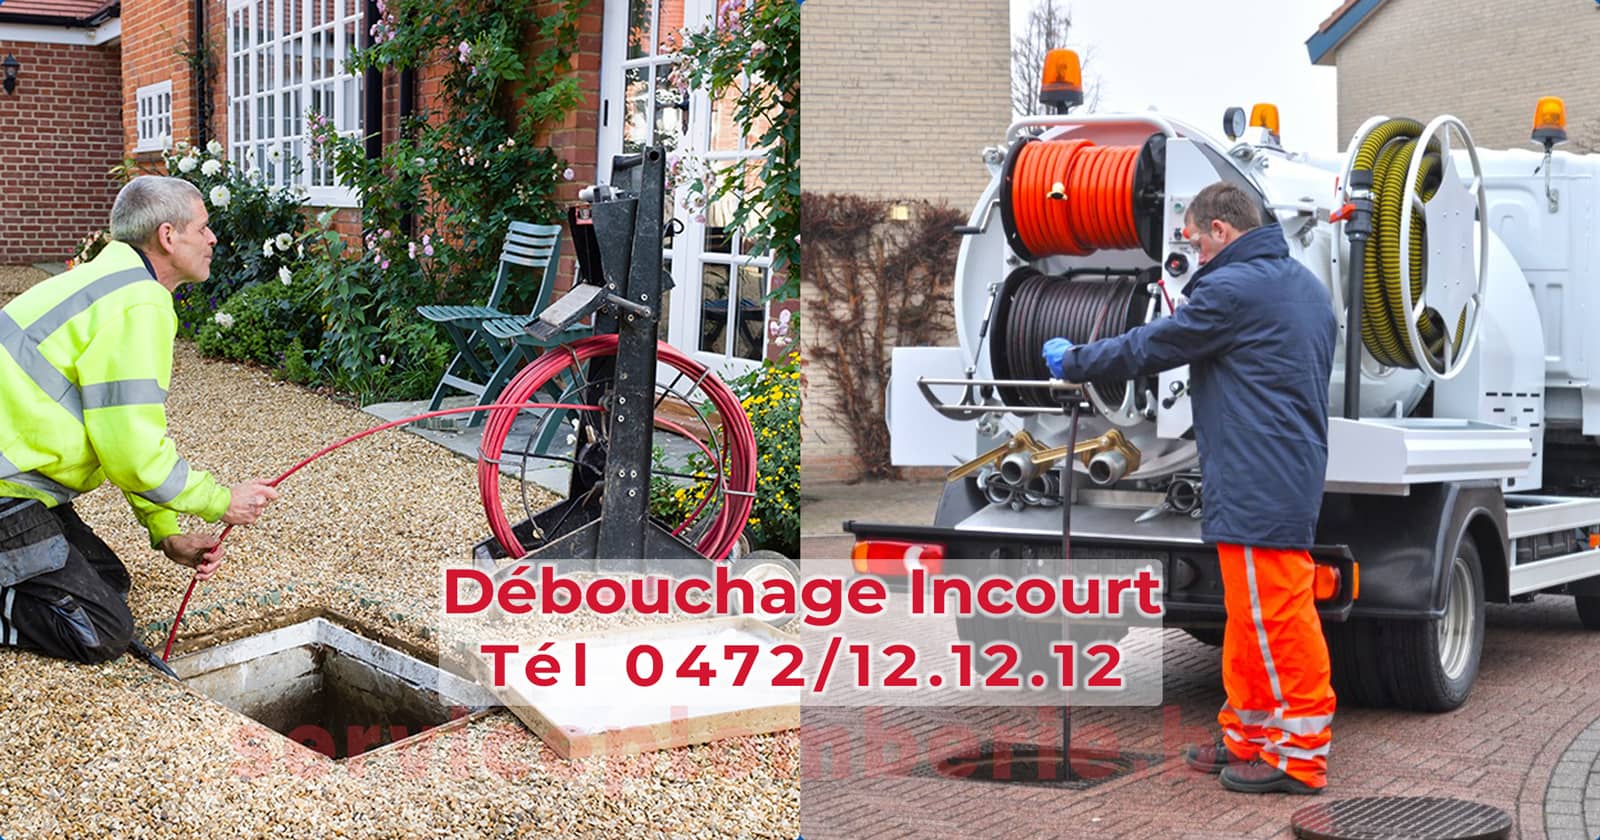 Débouchage Incourt d'égout Service Plomberie Tél 0472/12.12.12